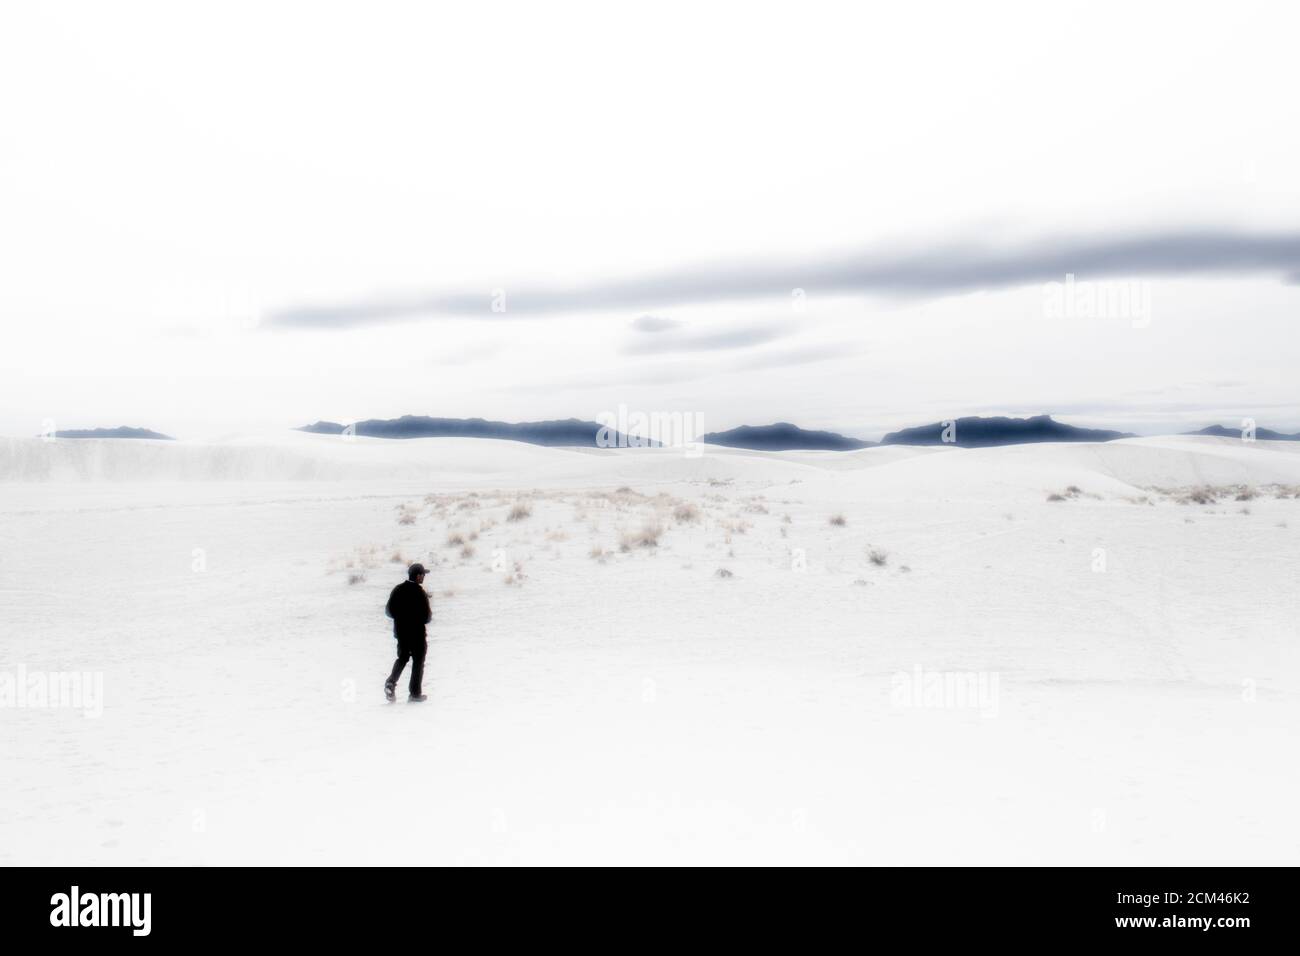 Vue sur les dunes de sable de gypse du parc national de White Sands avec une personne qui marche entre les dunes. Banque D'Images